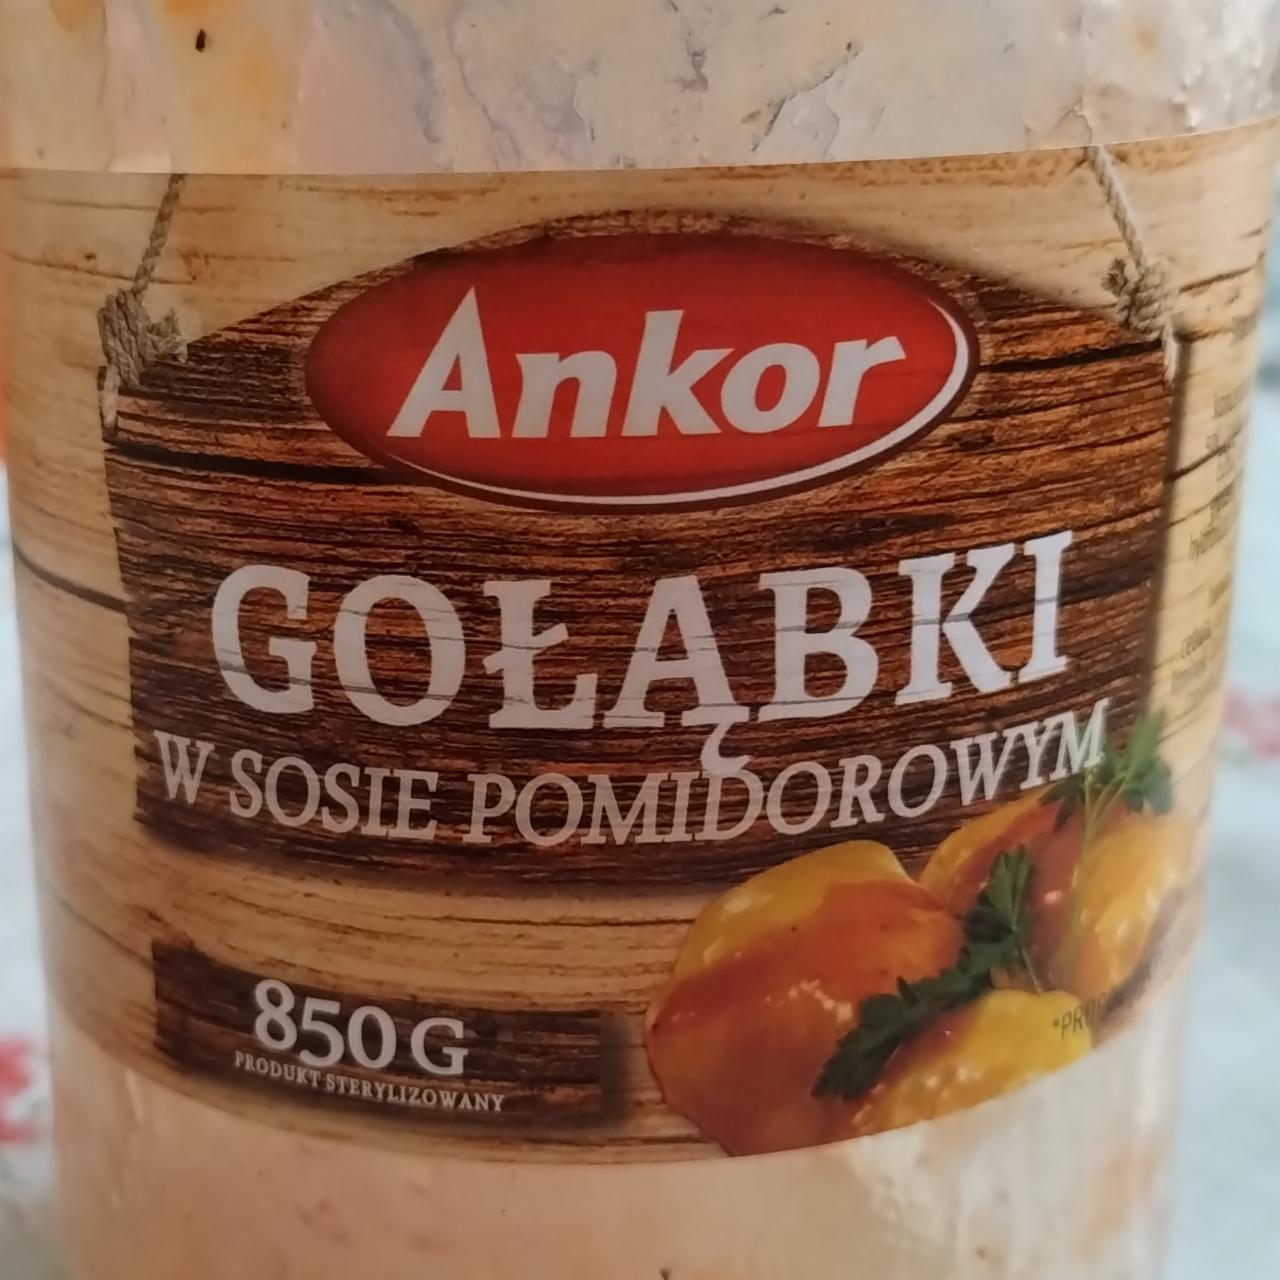 Fotografie - Golabki w sosie pomidorowyn Ankor